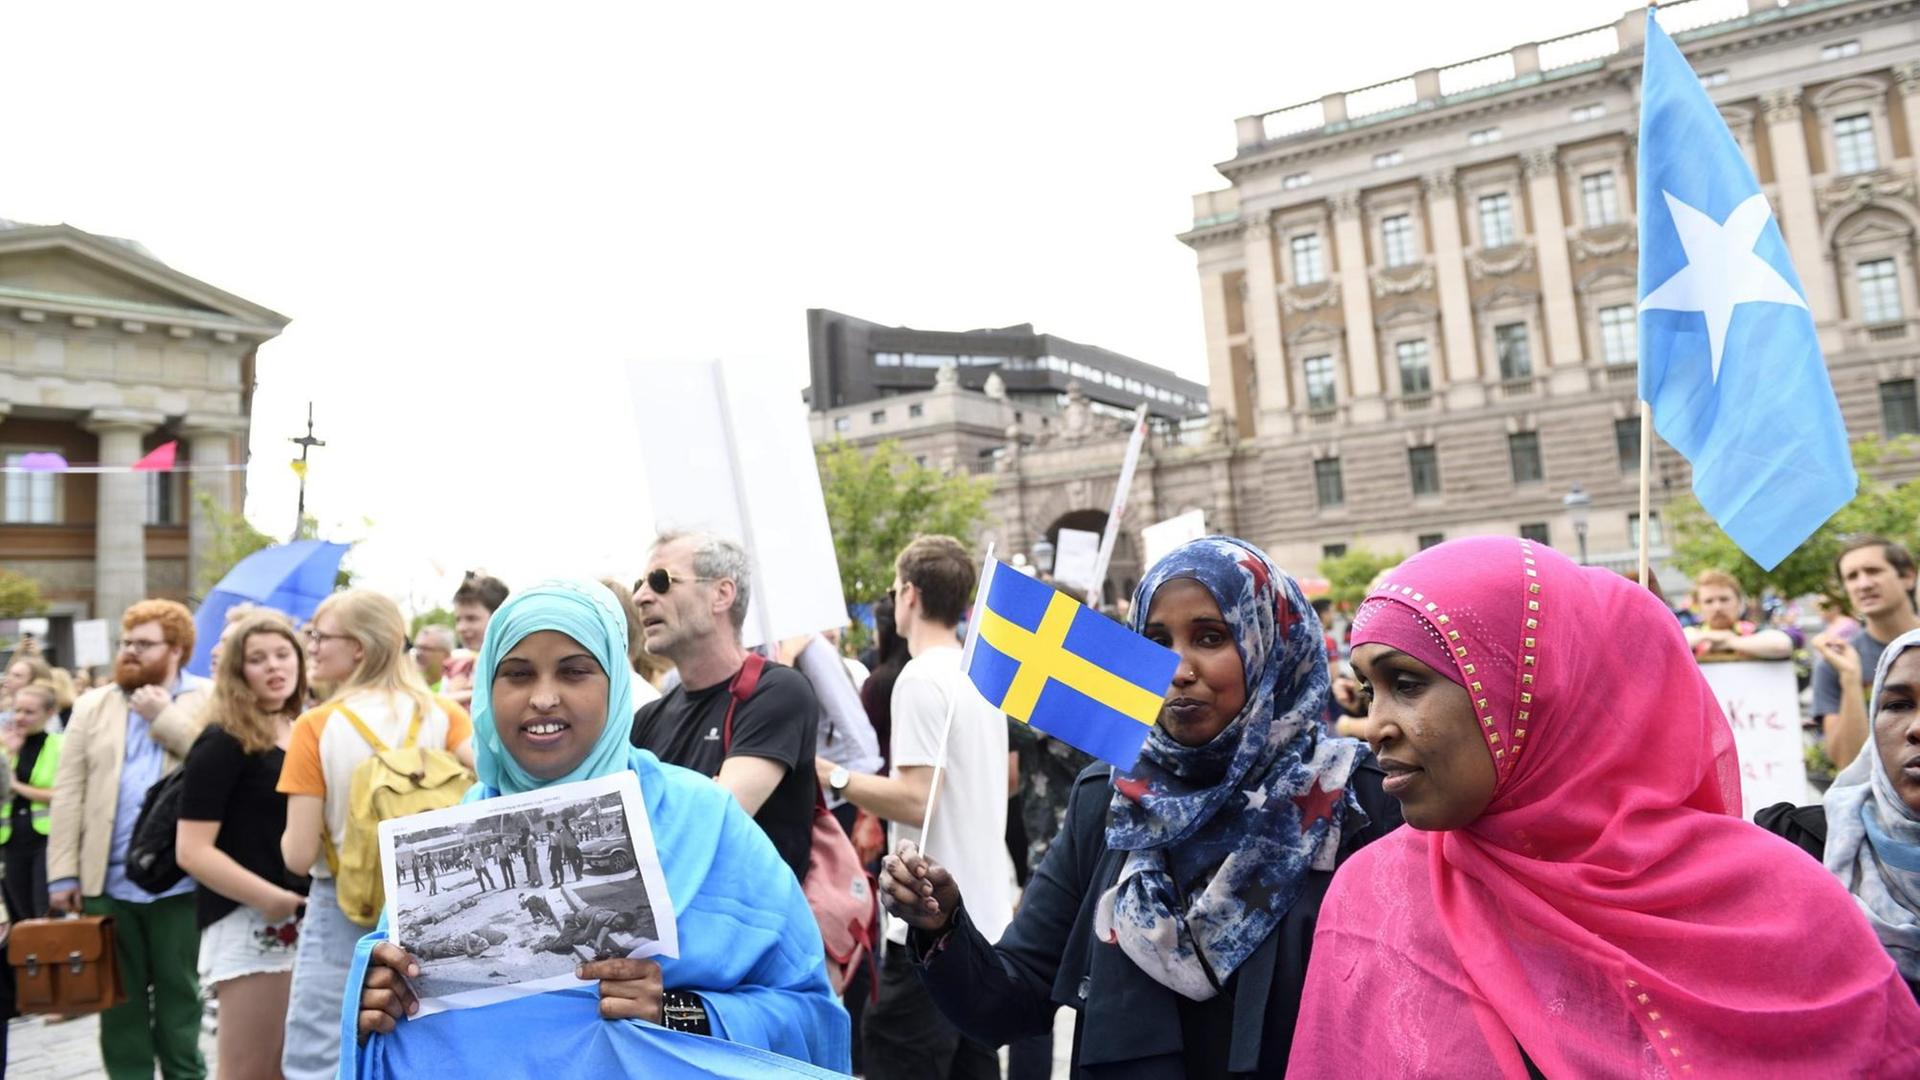 Demonstranten vor dem Schwedischen Parlament in Stockholm protestieren gegen Einschränkungen im Familiennachzug von Flüchtlingen - am 21. Juni 2016. Eine Frau hält ein Foto ihrer Angehörigen.